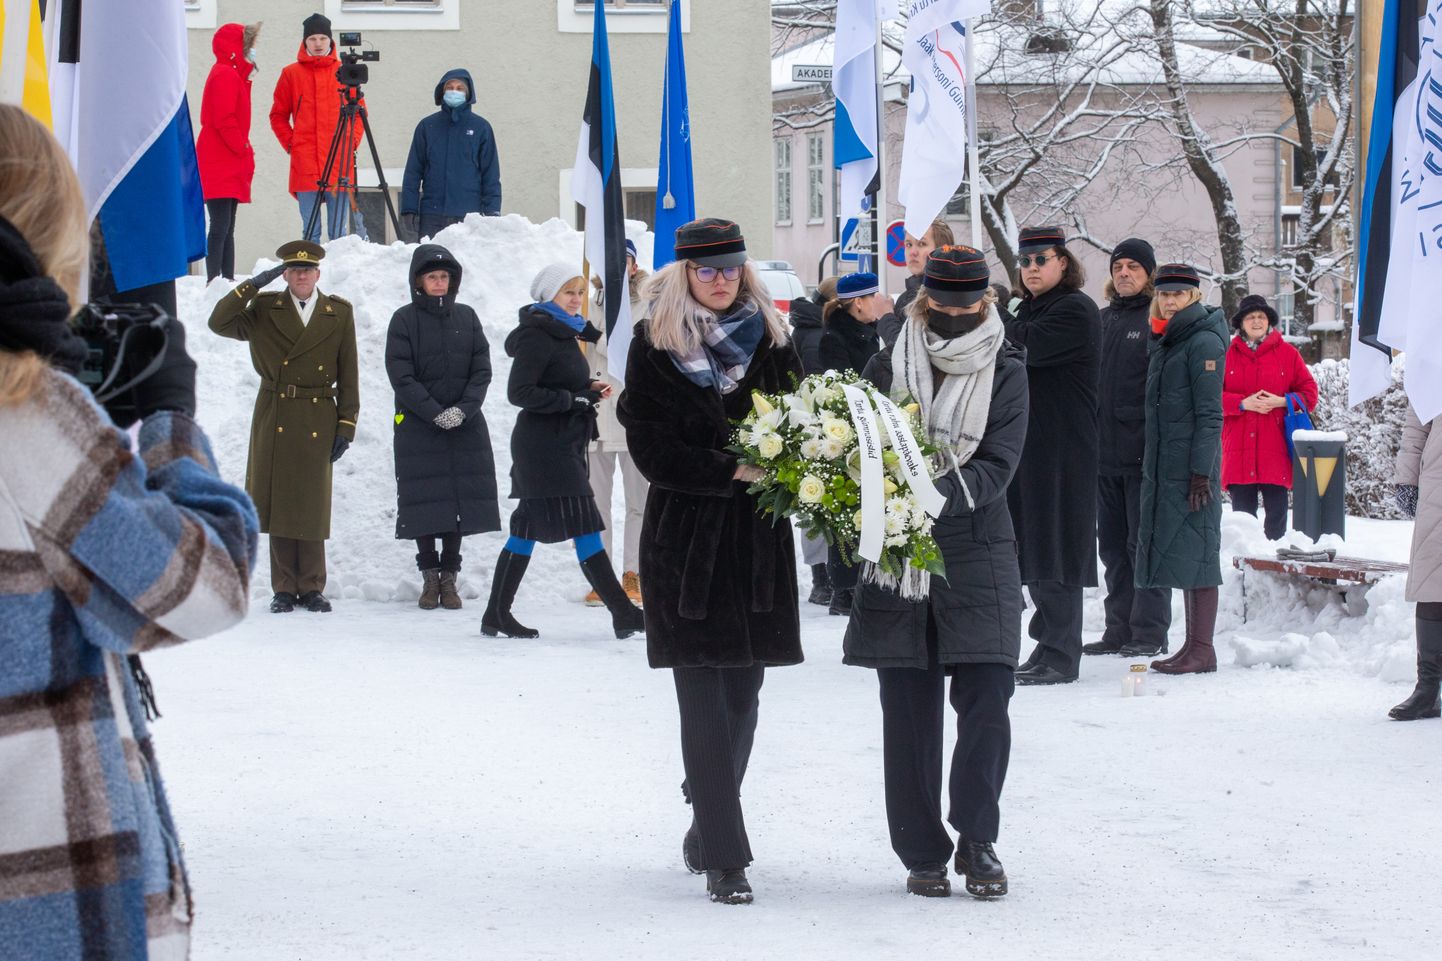 Tartu rahu aastapäeva tähistatakse traditsiooniliselt gümnasistide kõnekoosolekuga Poska gümnaasiumi juures. Sel aastal korraldab seda Miina Härma gümnaasium.